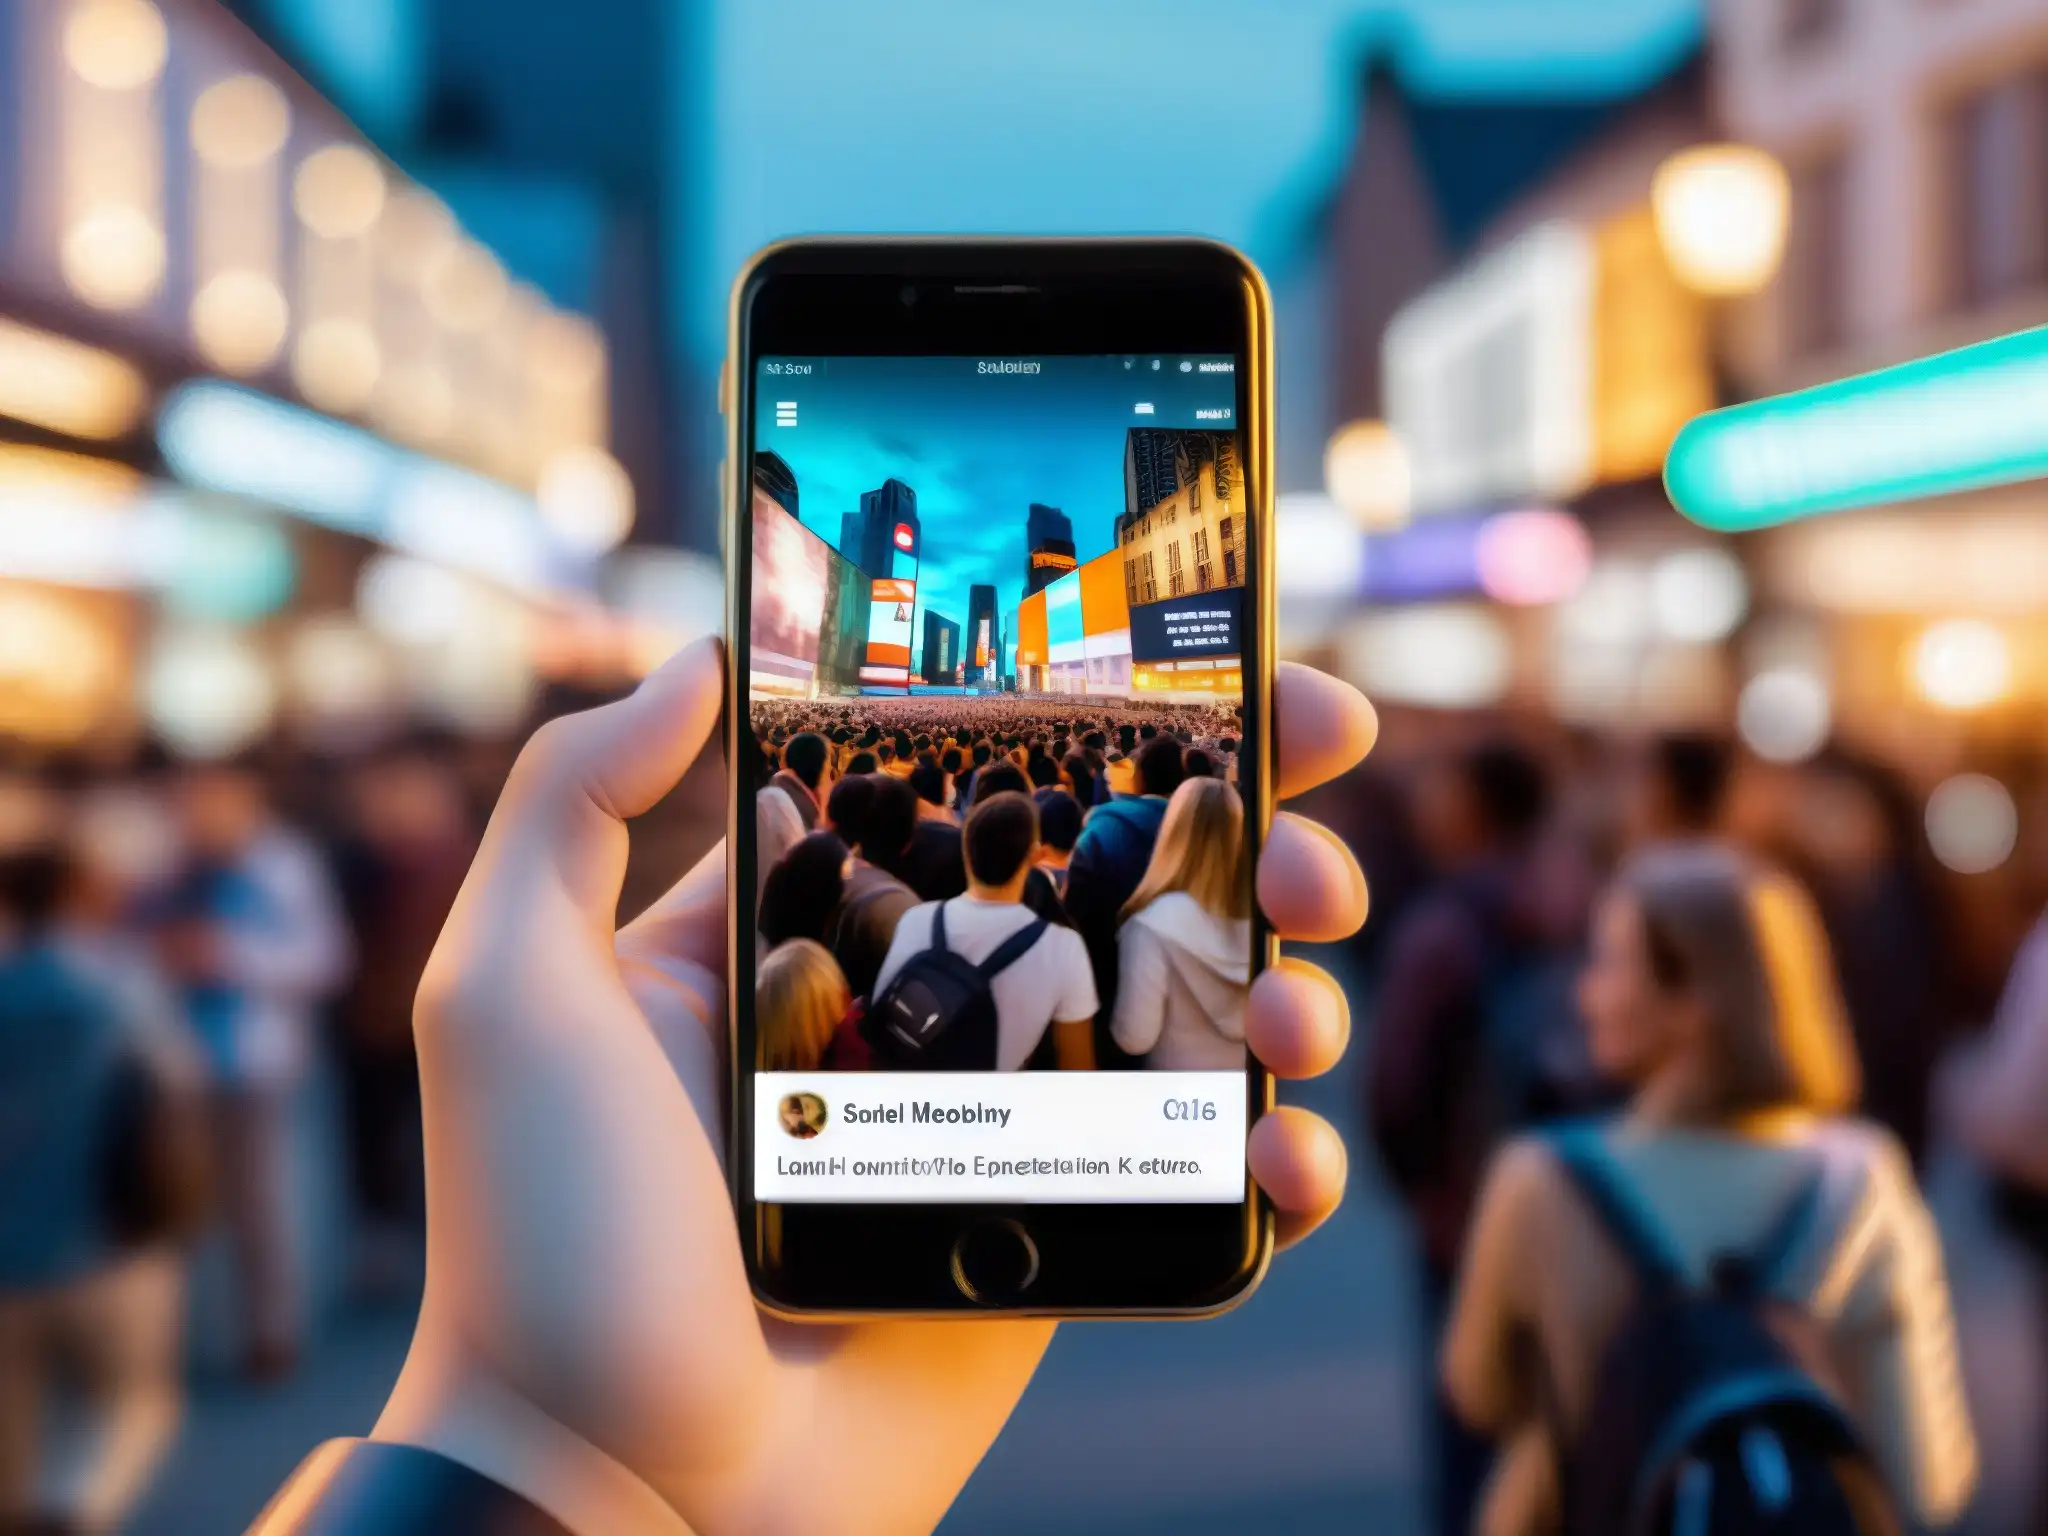 Mano sostiene smartphone con leyenda urbana en redes sociales, rodeada de personas